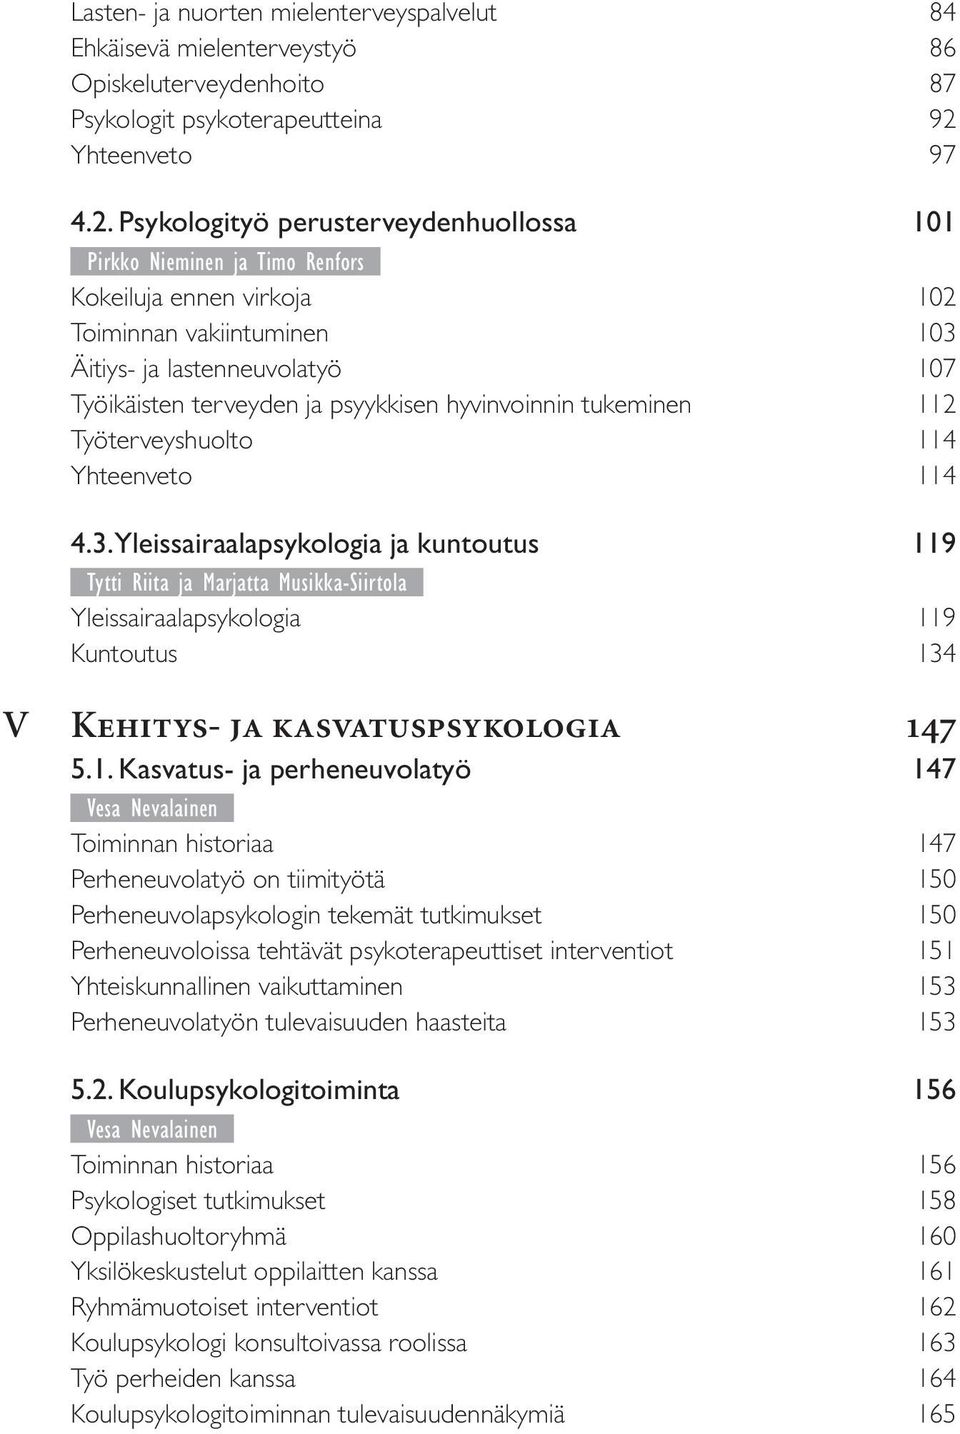 Psykologityö perusterveydenhuollossa 101 Pirkko Nieminen ja Timo Renfors Kokeiluja ennen virkoja 102 Toiminnan vakiintuminen 103 Äitiys- ja lastenneuvolatyö 107 Työikäisten terveyden ja psyykkisen